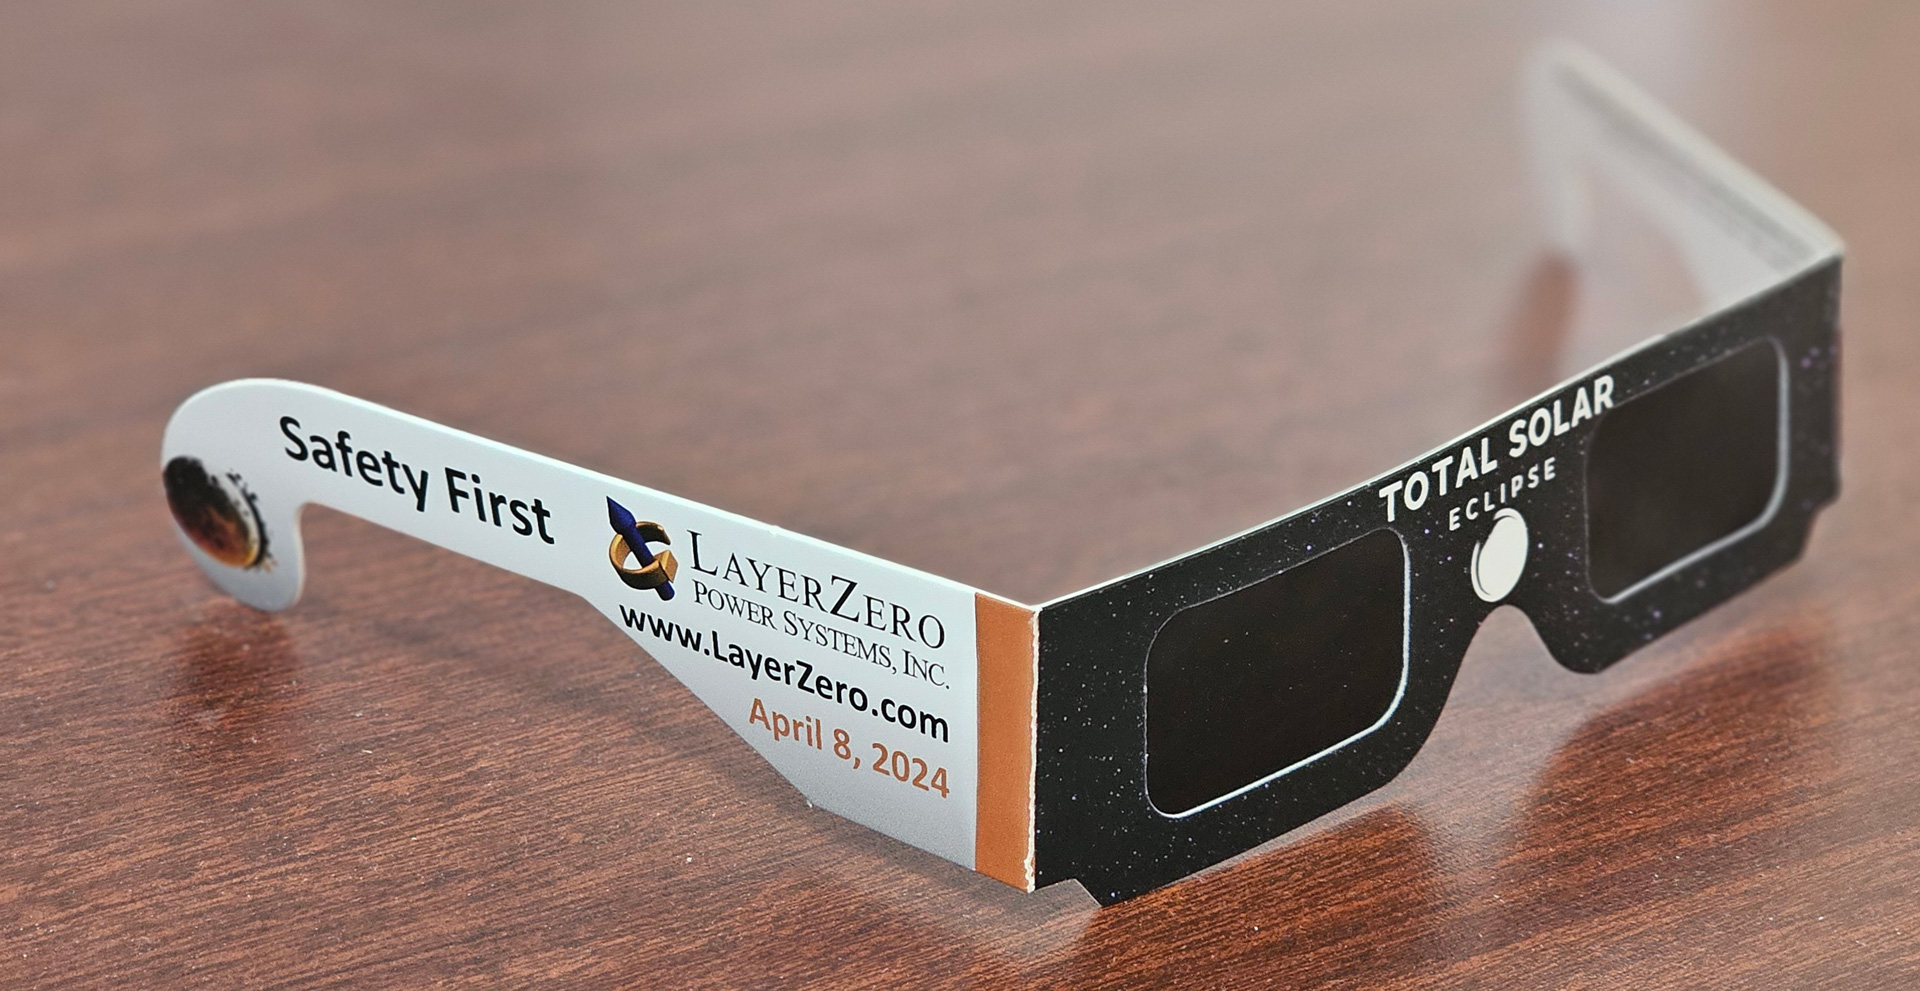 LayerZero Total Eclipse Glasses